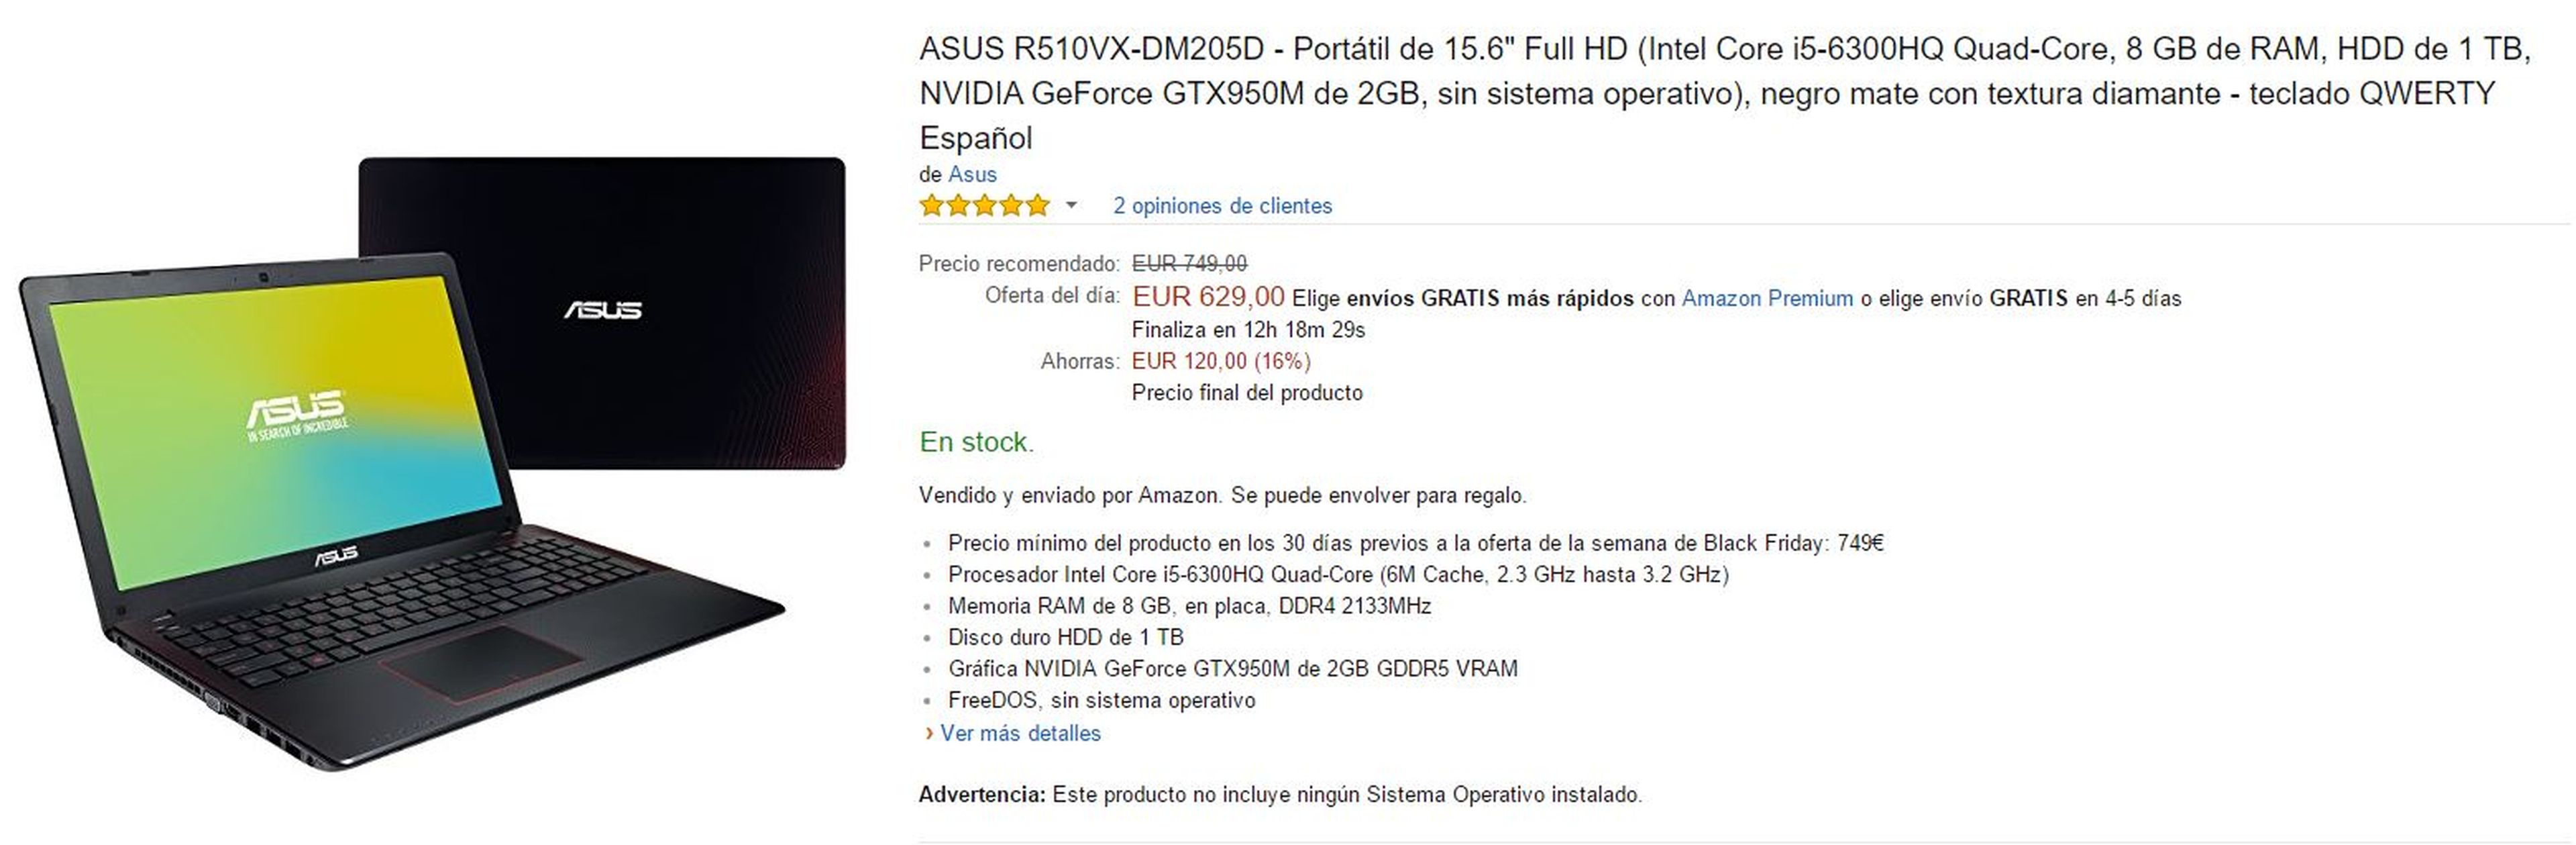 Portátil Asus R510VX-DM205D